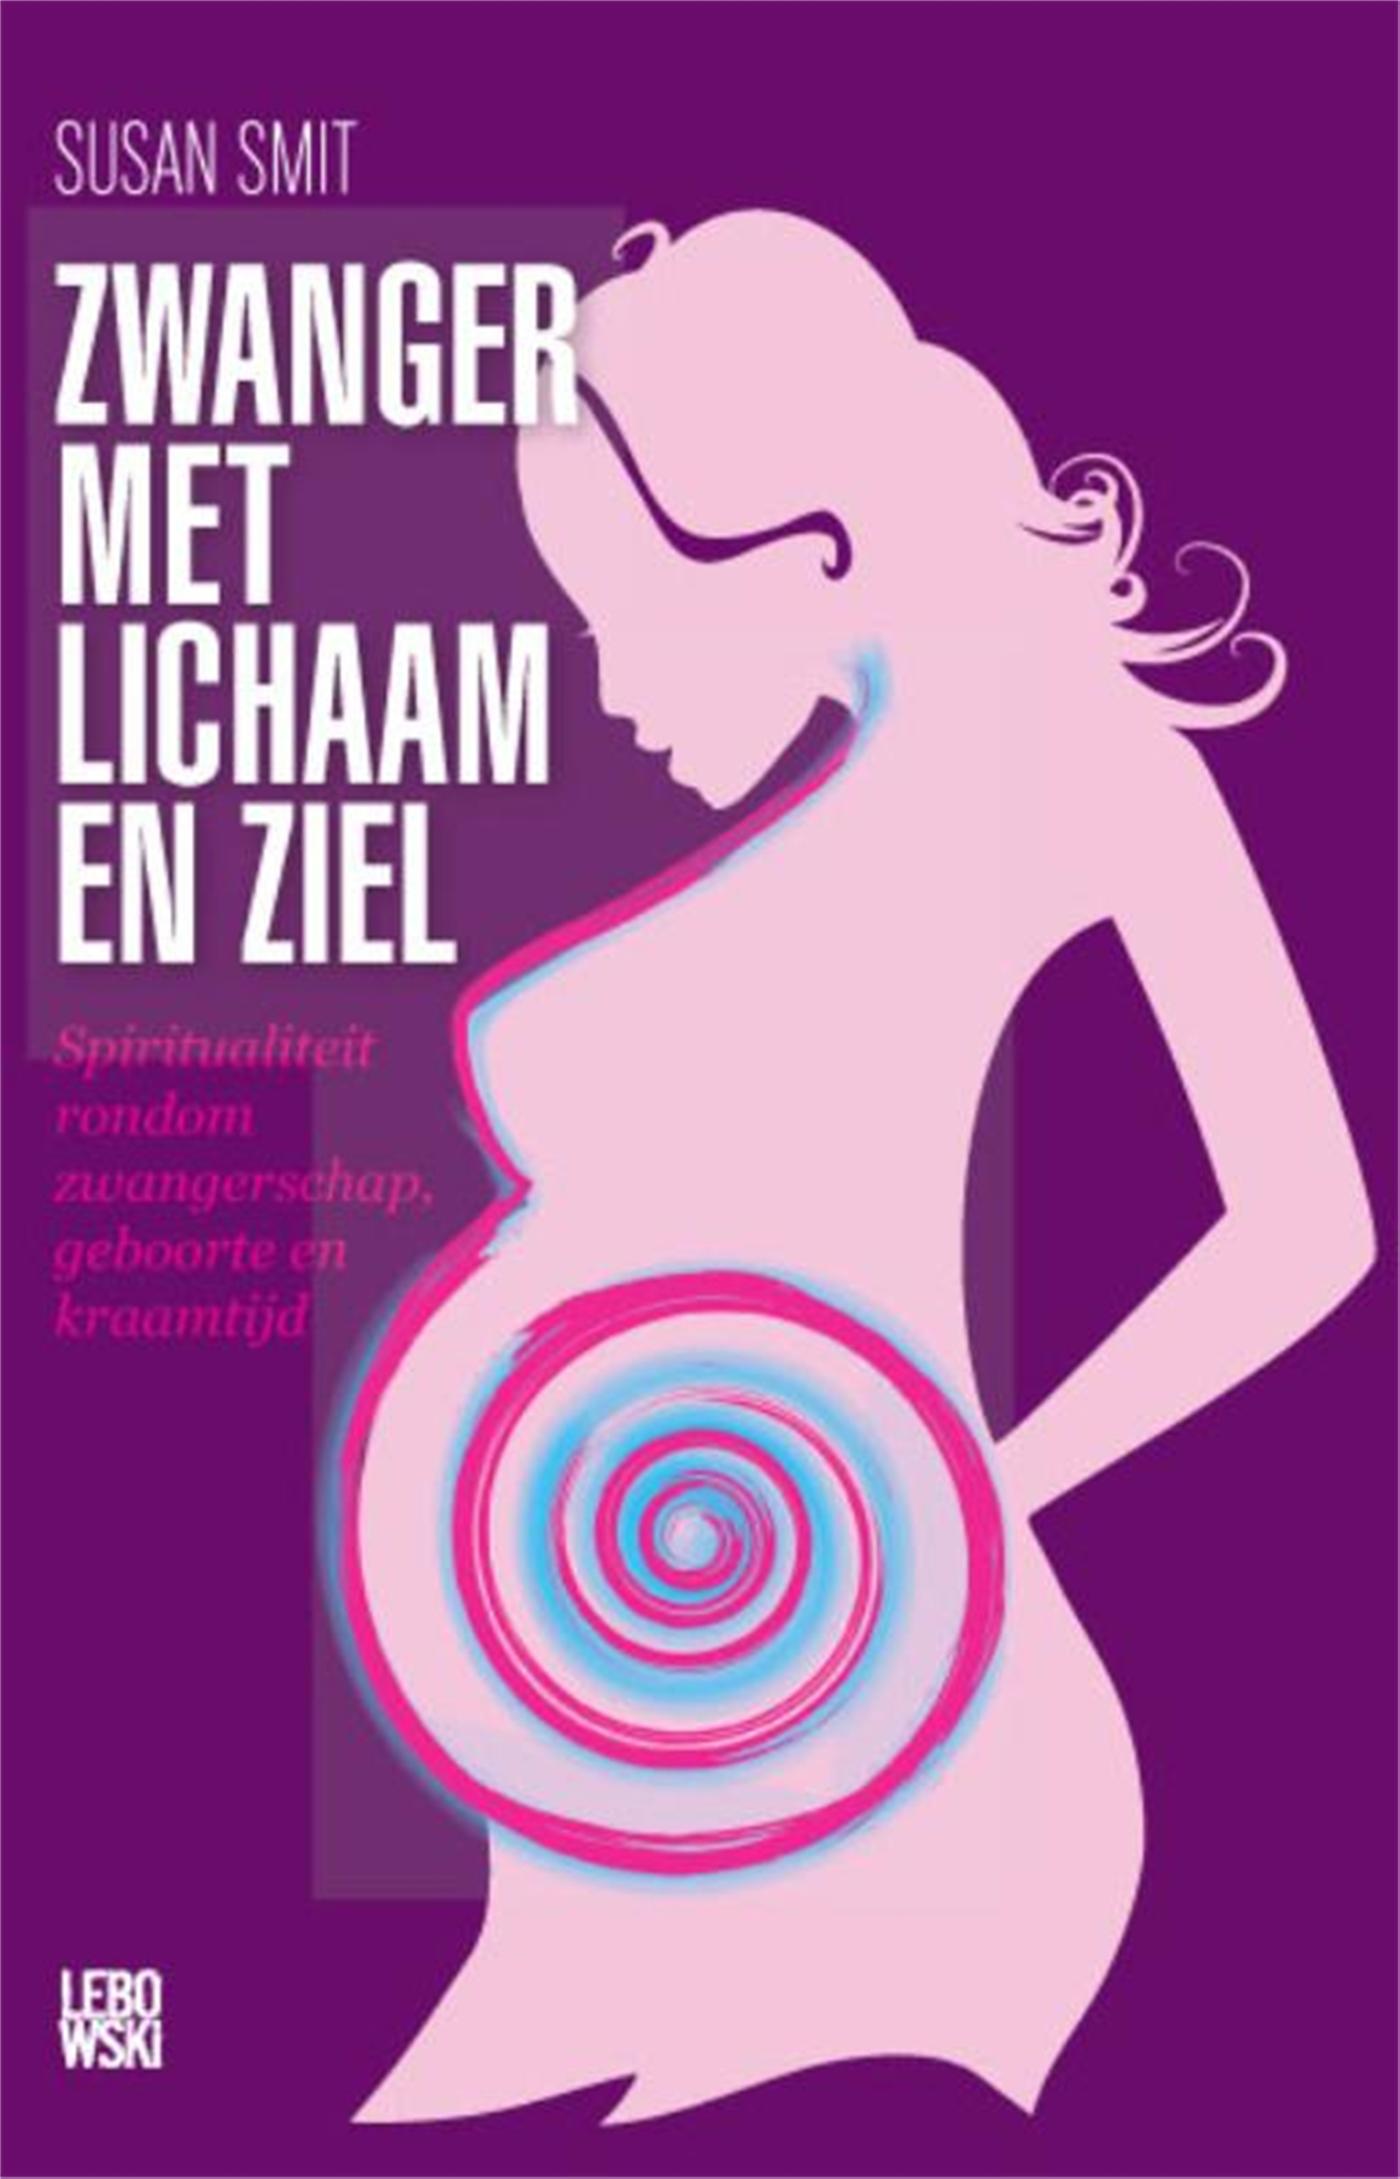 Zwanger met lichaam en ziel (Ebook)